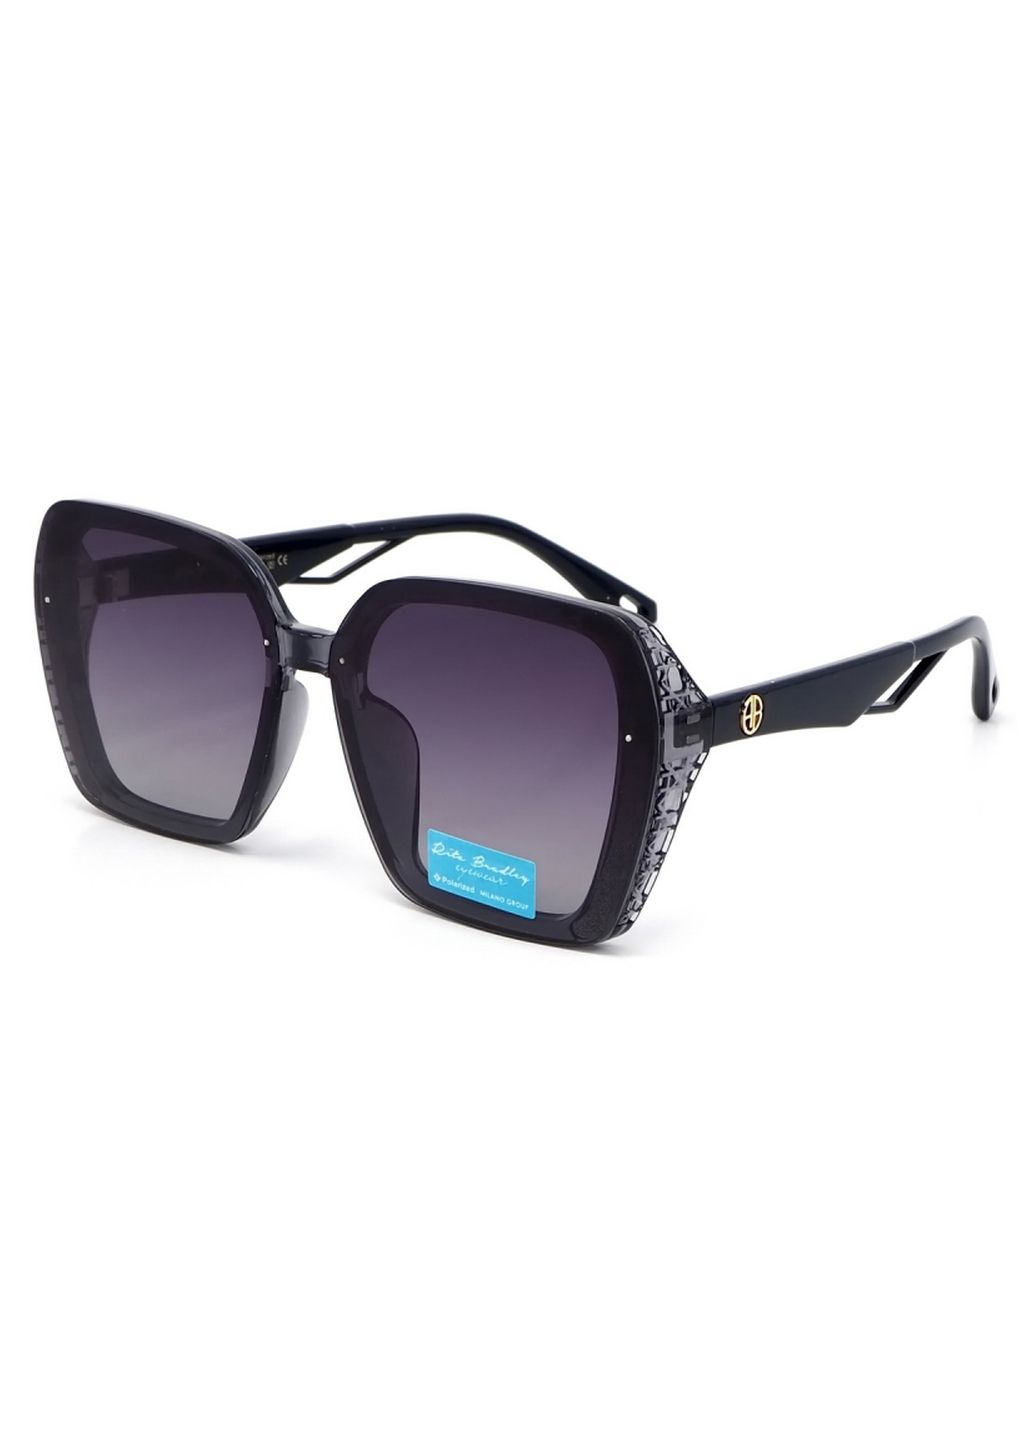 Купить Женские солнцезащитные очки Rita Bradley с поляризацией RB730 112074 в интернет-магазине